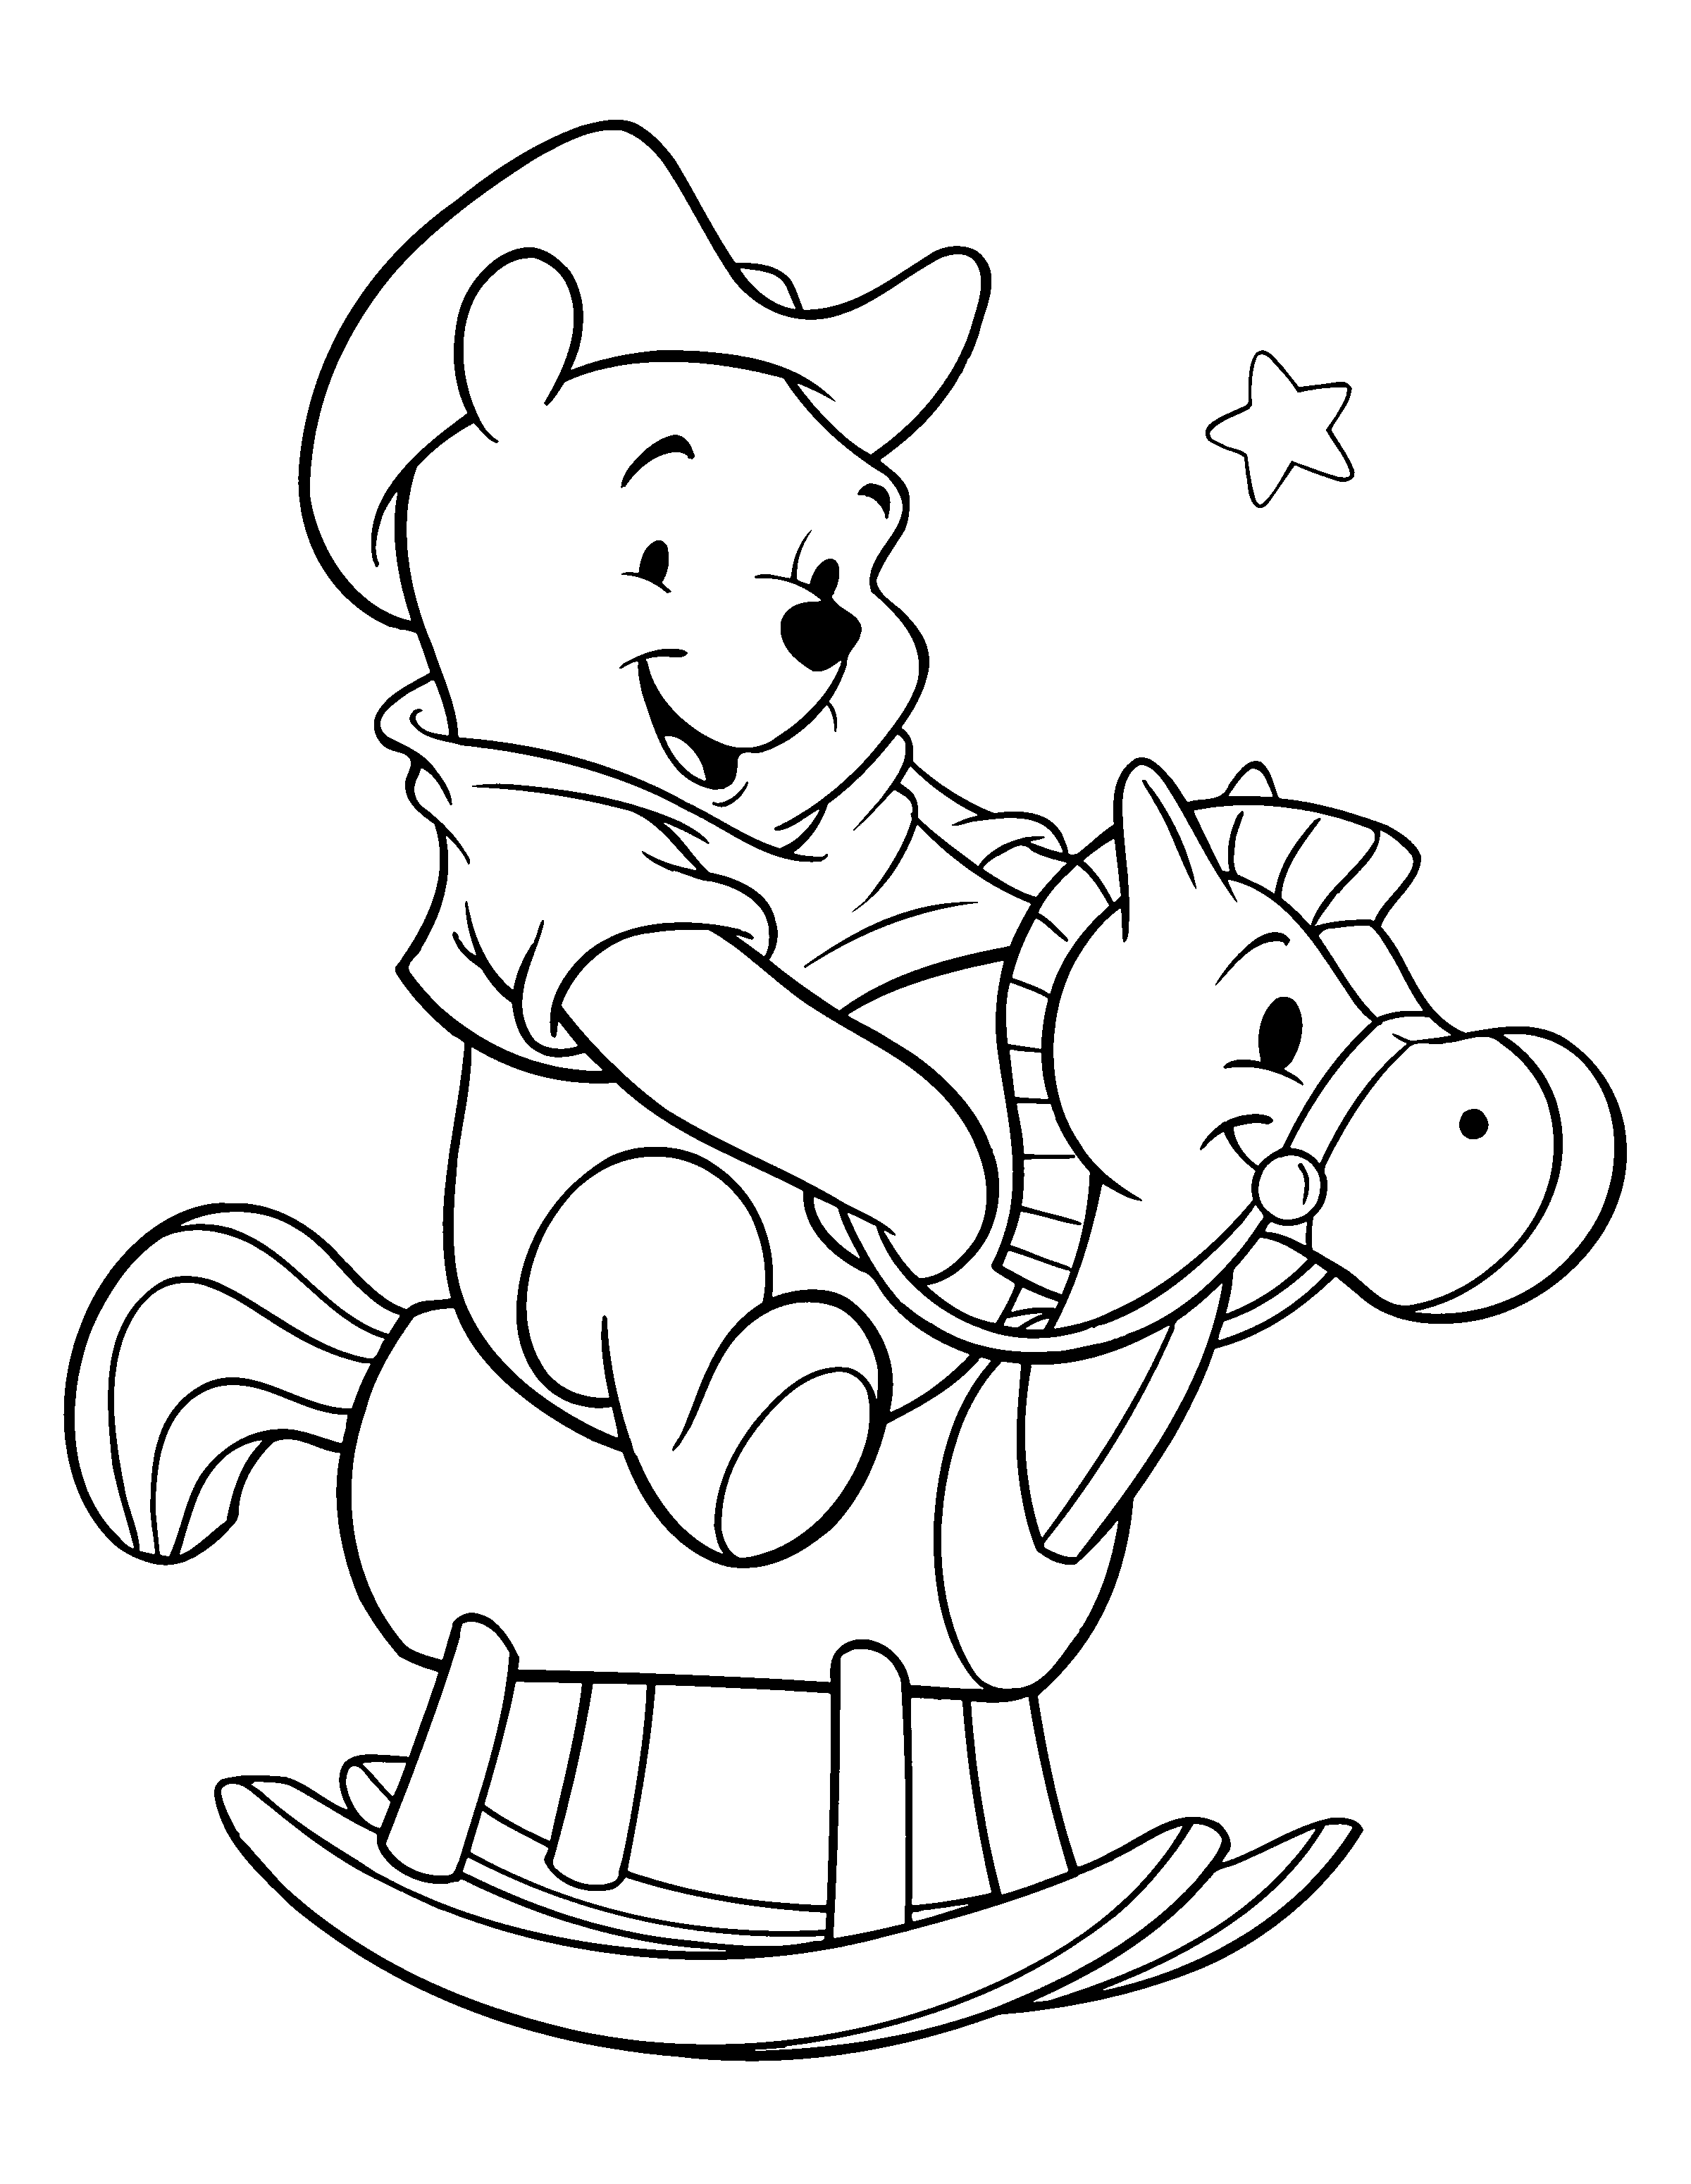 Tranh tô màu gấu Pooh cưỡi ngựa gỗ